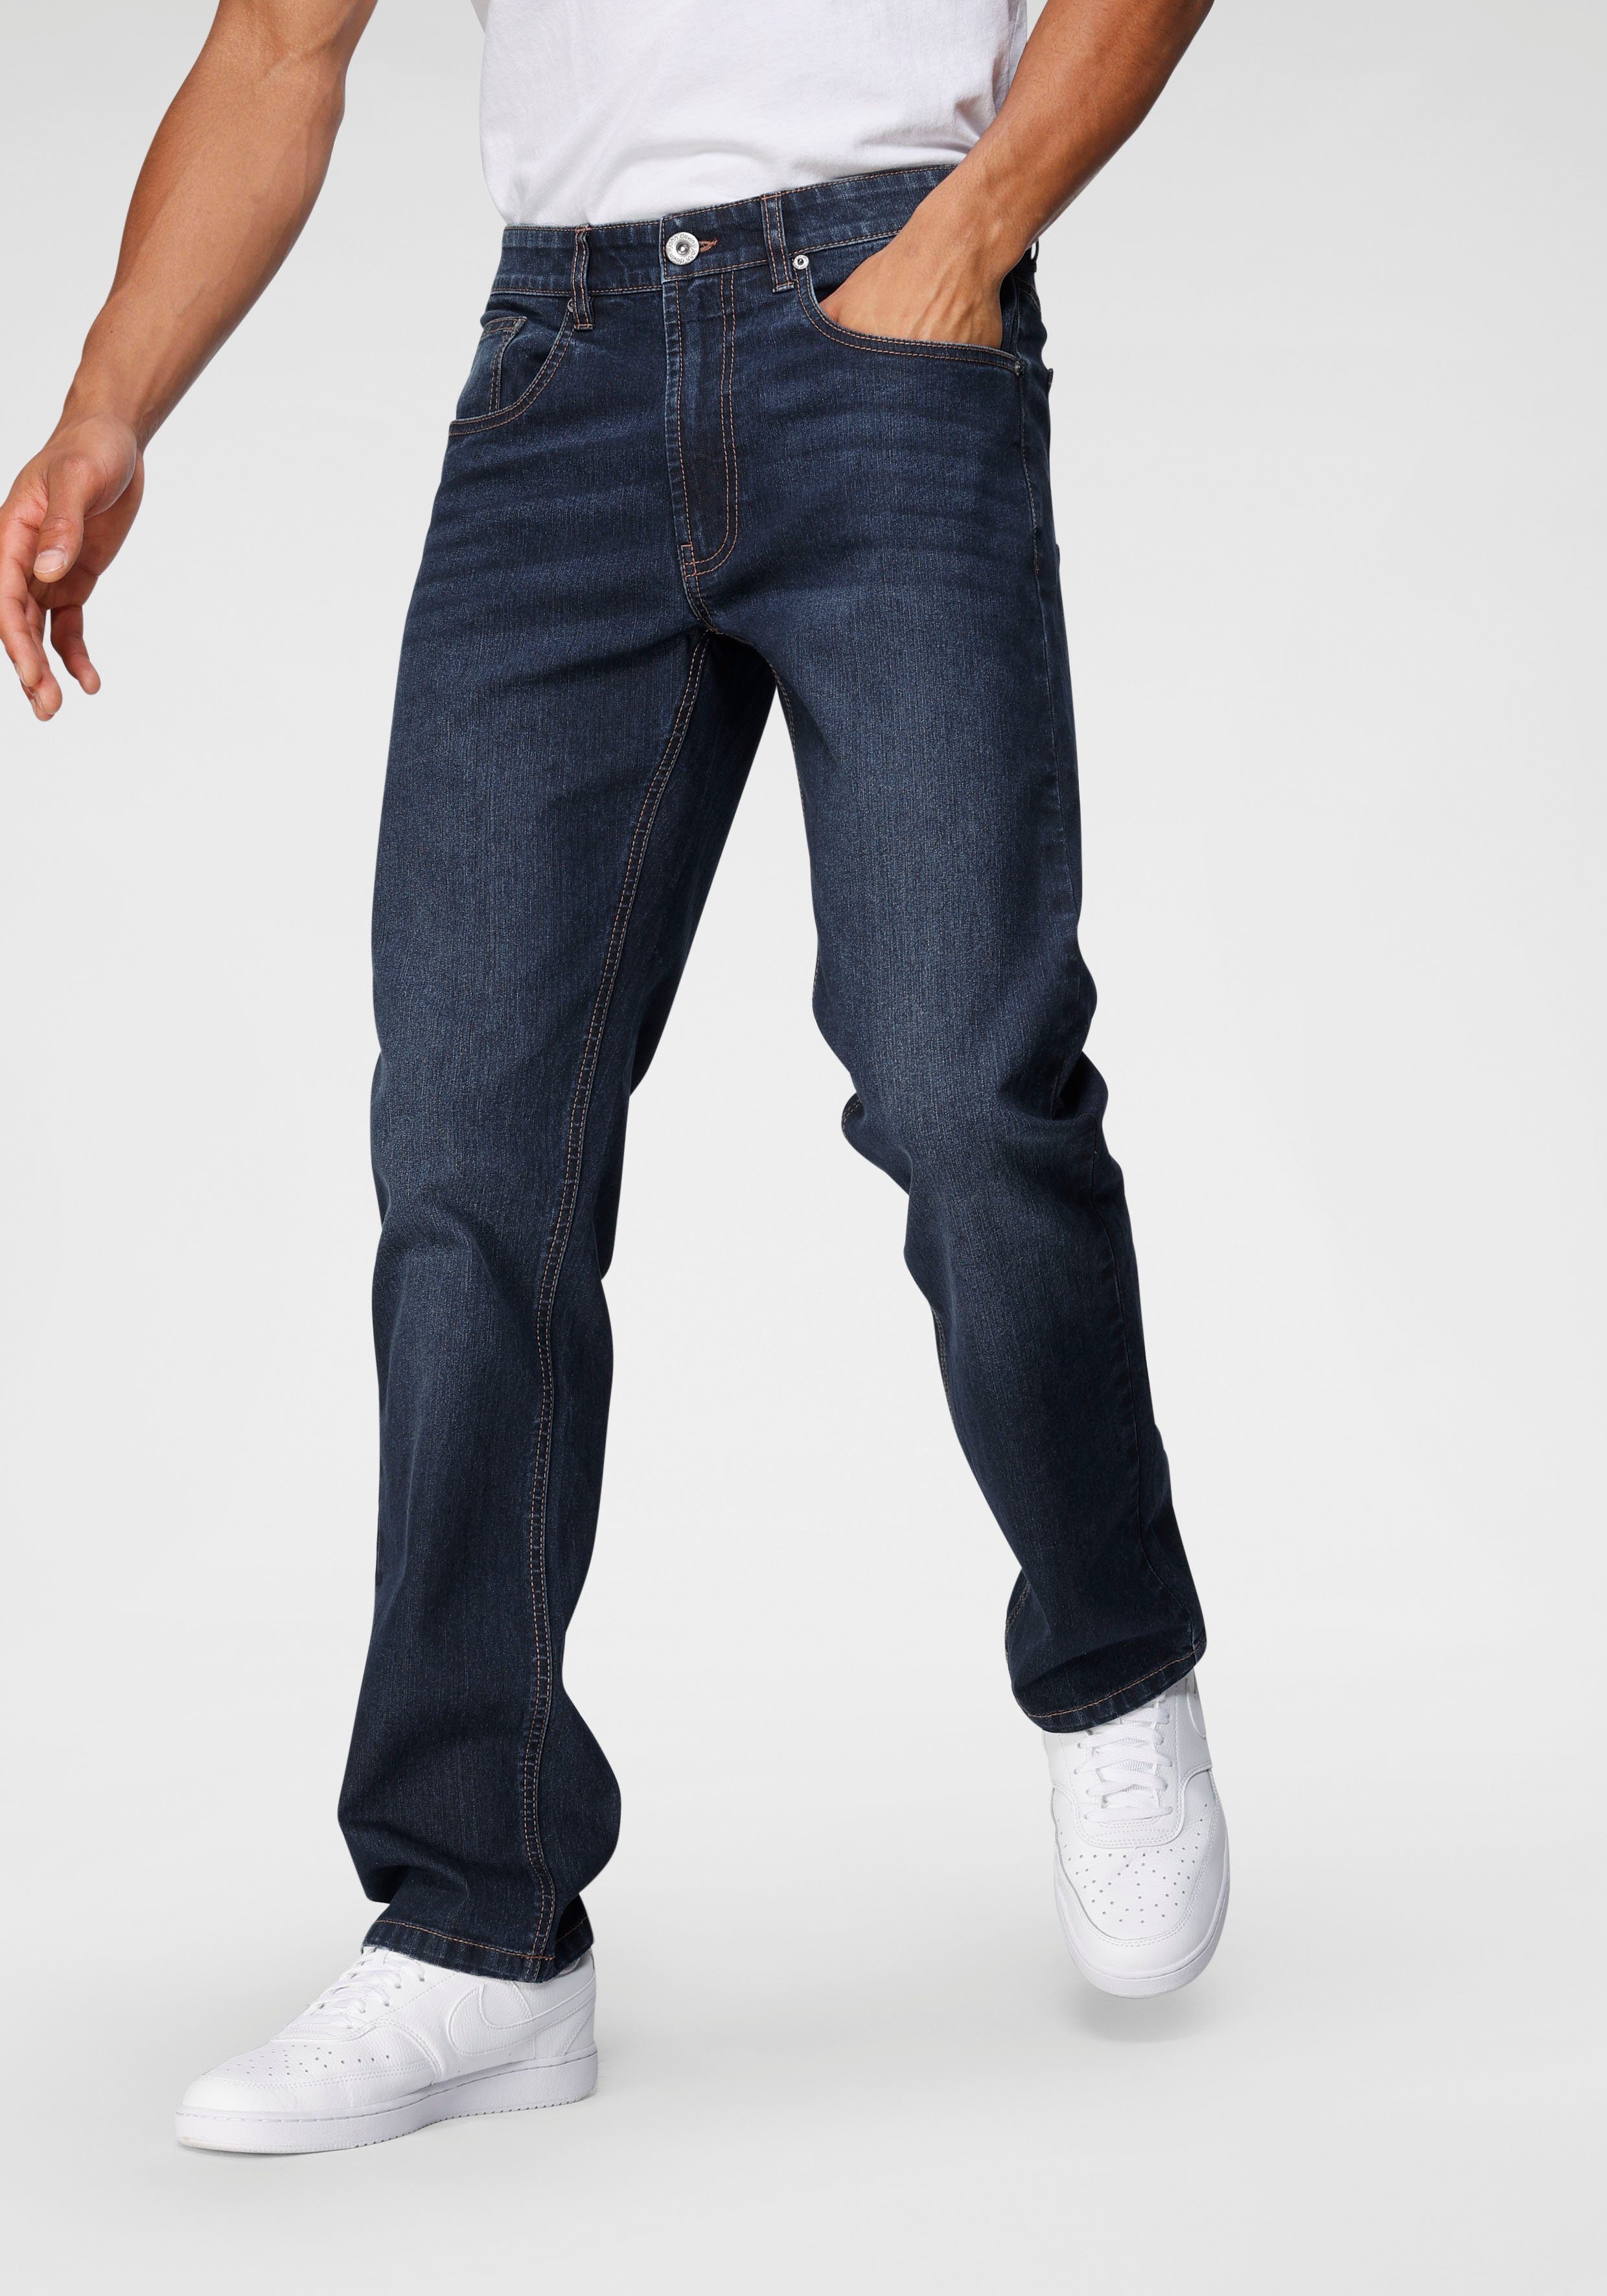 Rabatt 70 % DAMEN Jeans Elastisch Blau 38 SHEIN Straight jeans 